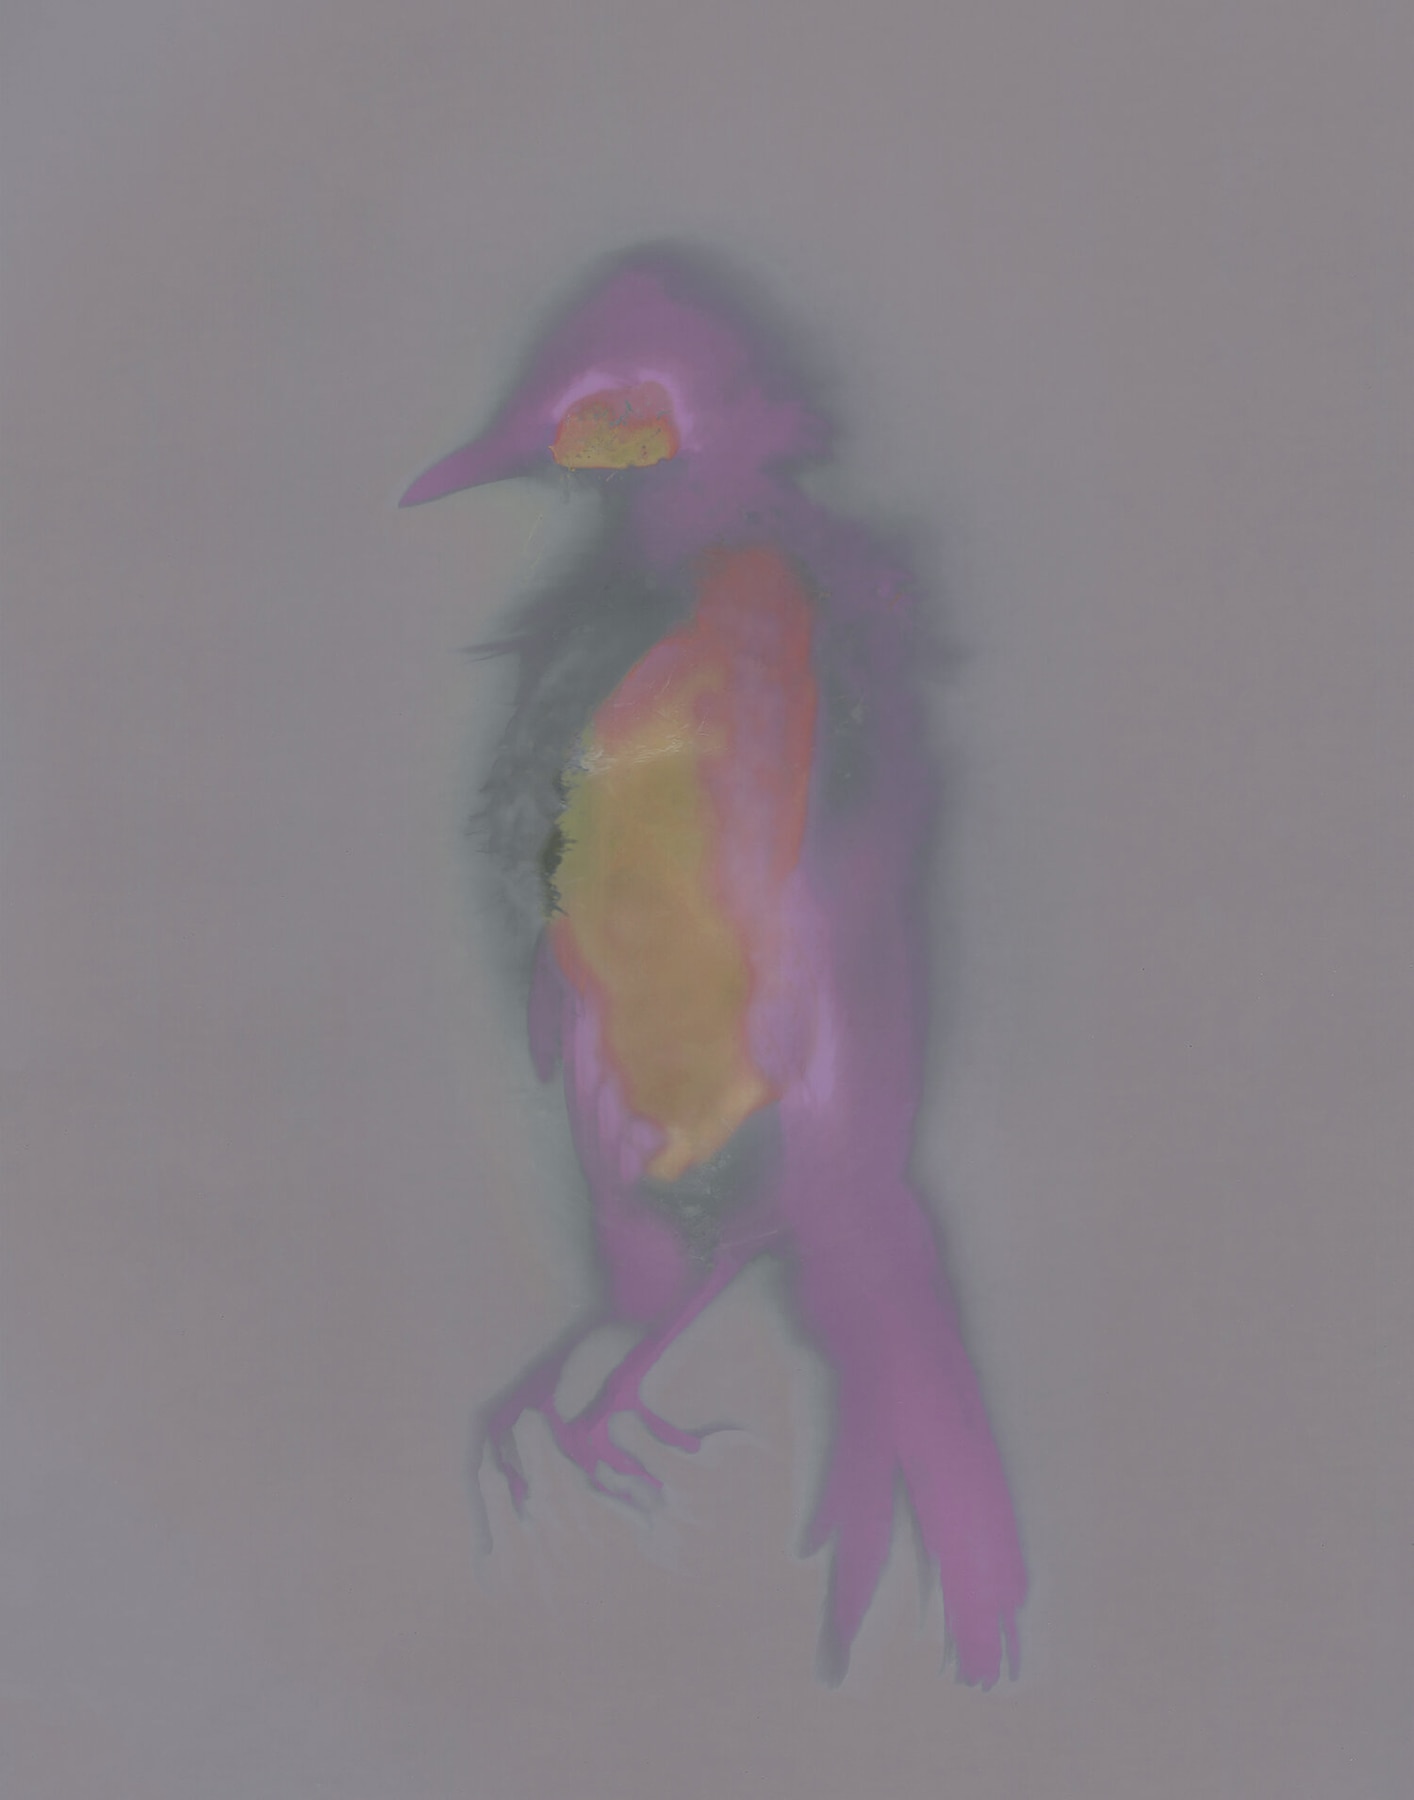 Fallen Bird 1, Virginia Carr, 2020, 7in x 5in, $300